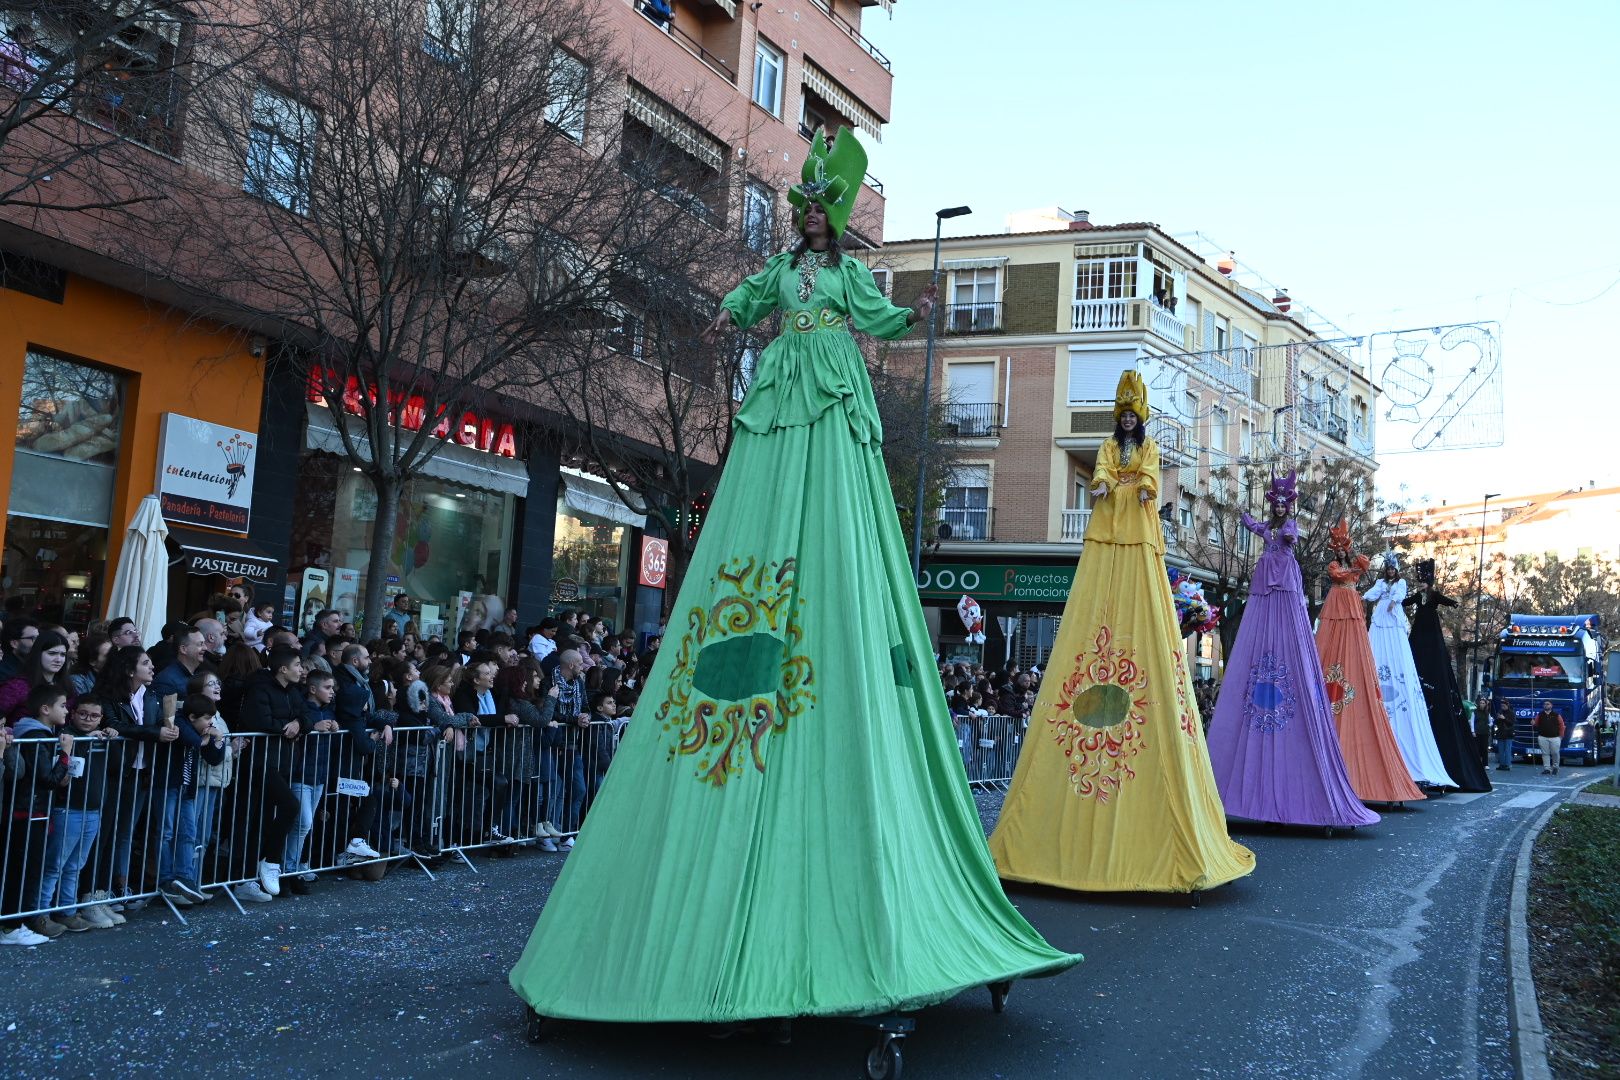 GALERÍA | Las imágenes de la cabalgata de Reyes Magos en Badajoz